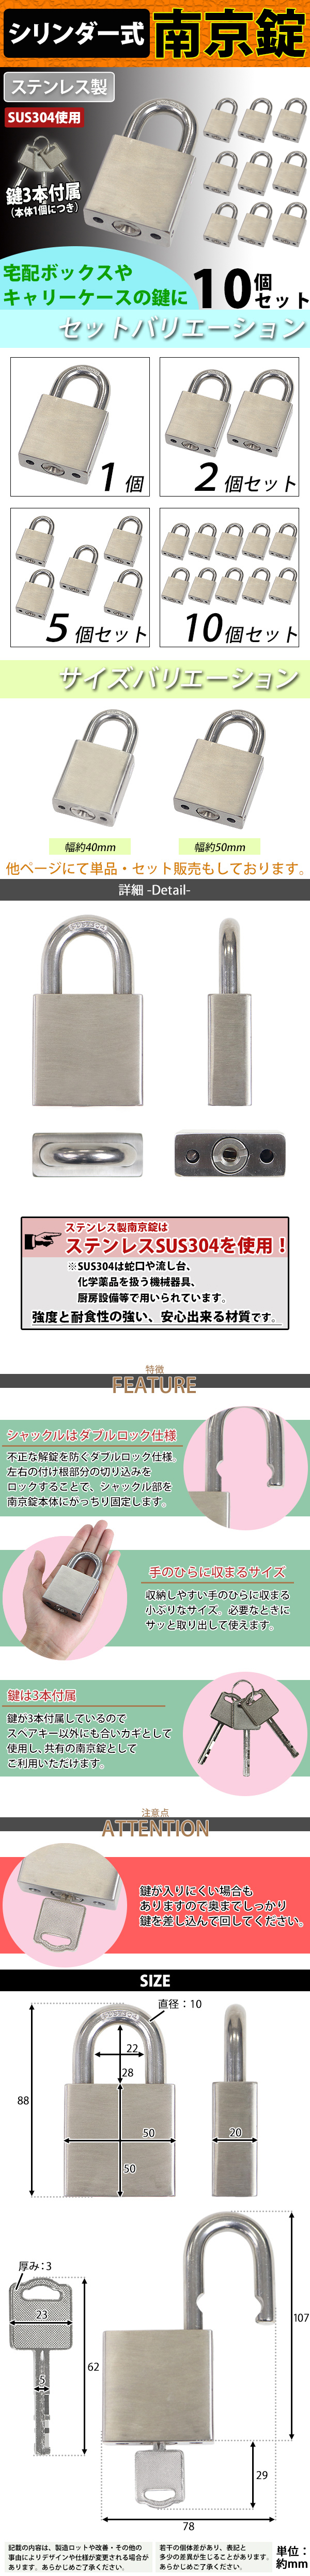 日本廉価送料無料 シリンダー式 ステンレス製 南京錠 幅約50mm 10個 シャックル径約10mm 鍵3本付属 SUS304 オールステンレス ステンレス シリンダー 鍵